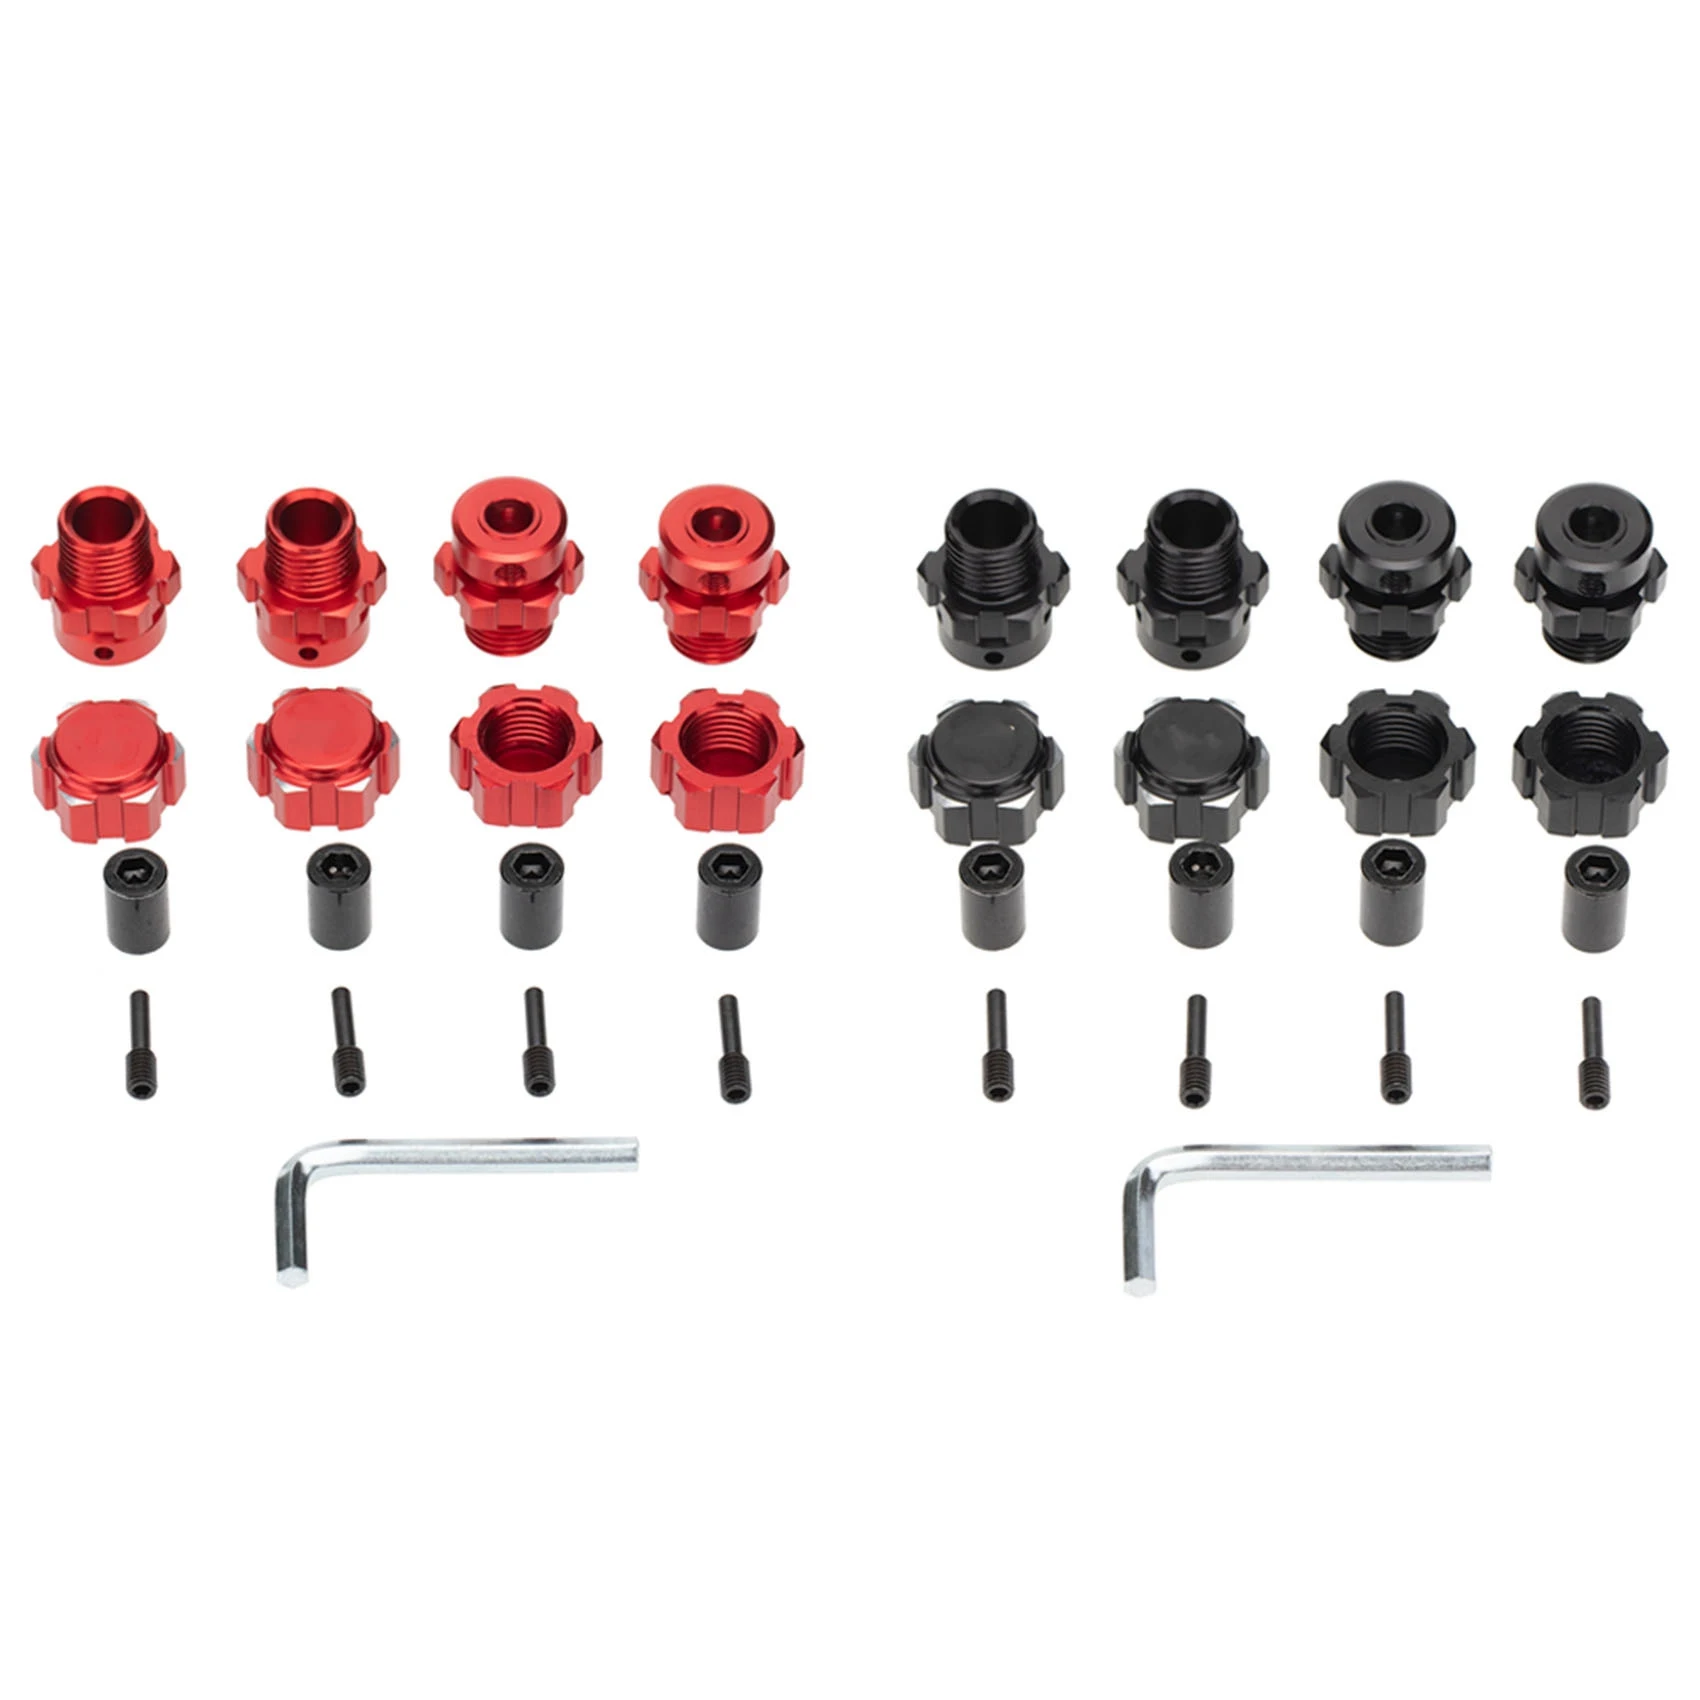 

2 комплекта, 17 мм, шестигранные, зеркальные ступицы, удлинитель для радиоуправляемых автомобилей 1/10 Traxxas, черные и красные